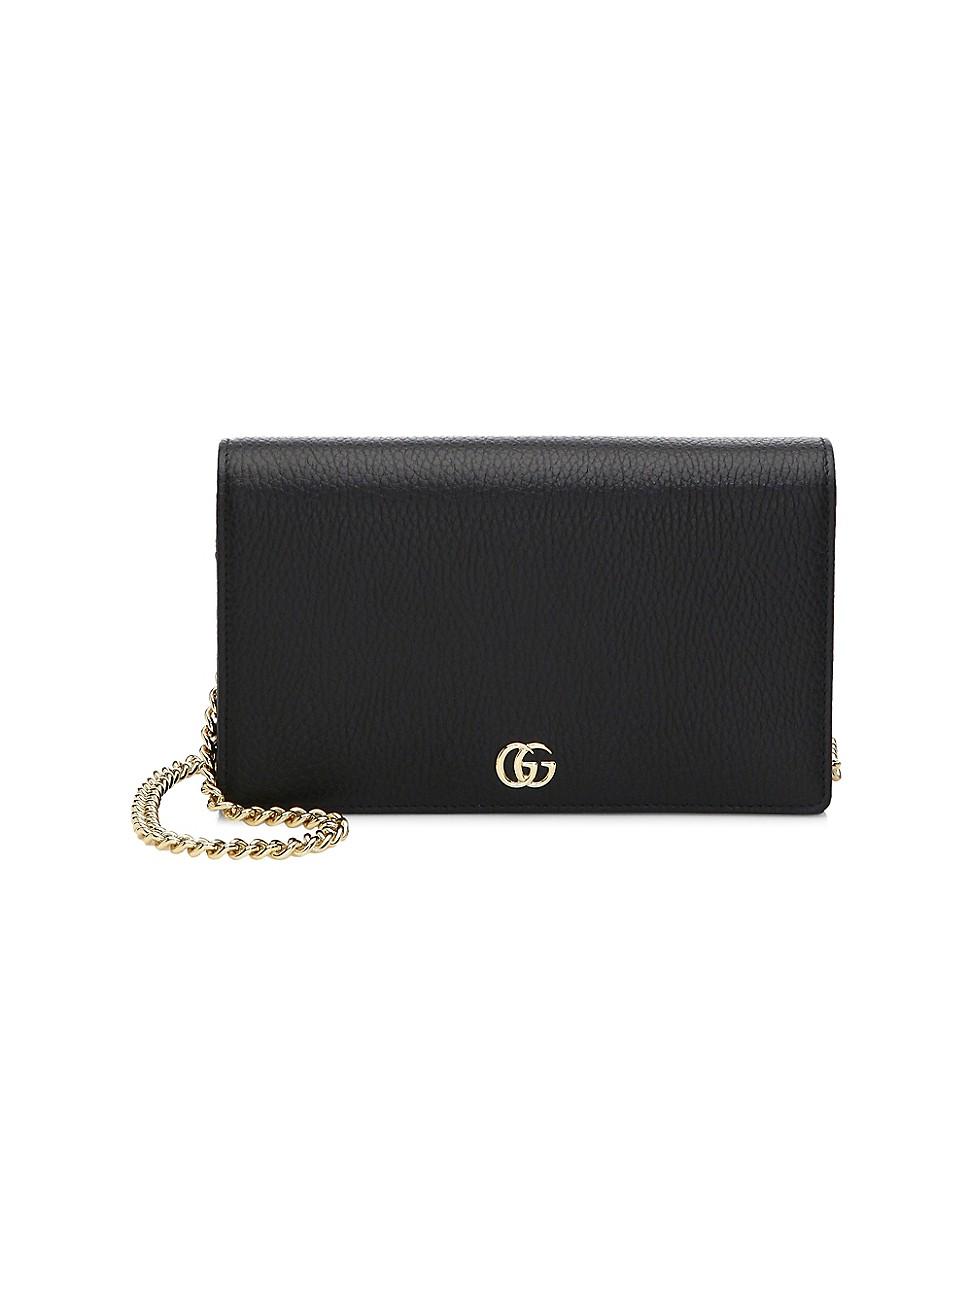 Gucci GG Marmont Mini Chain Bag in Black - Lyst